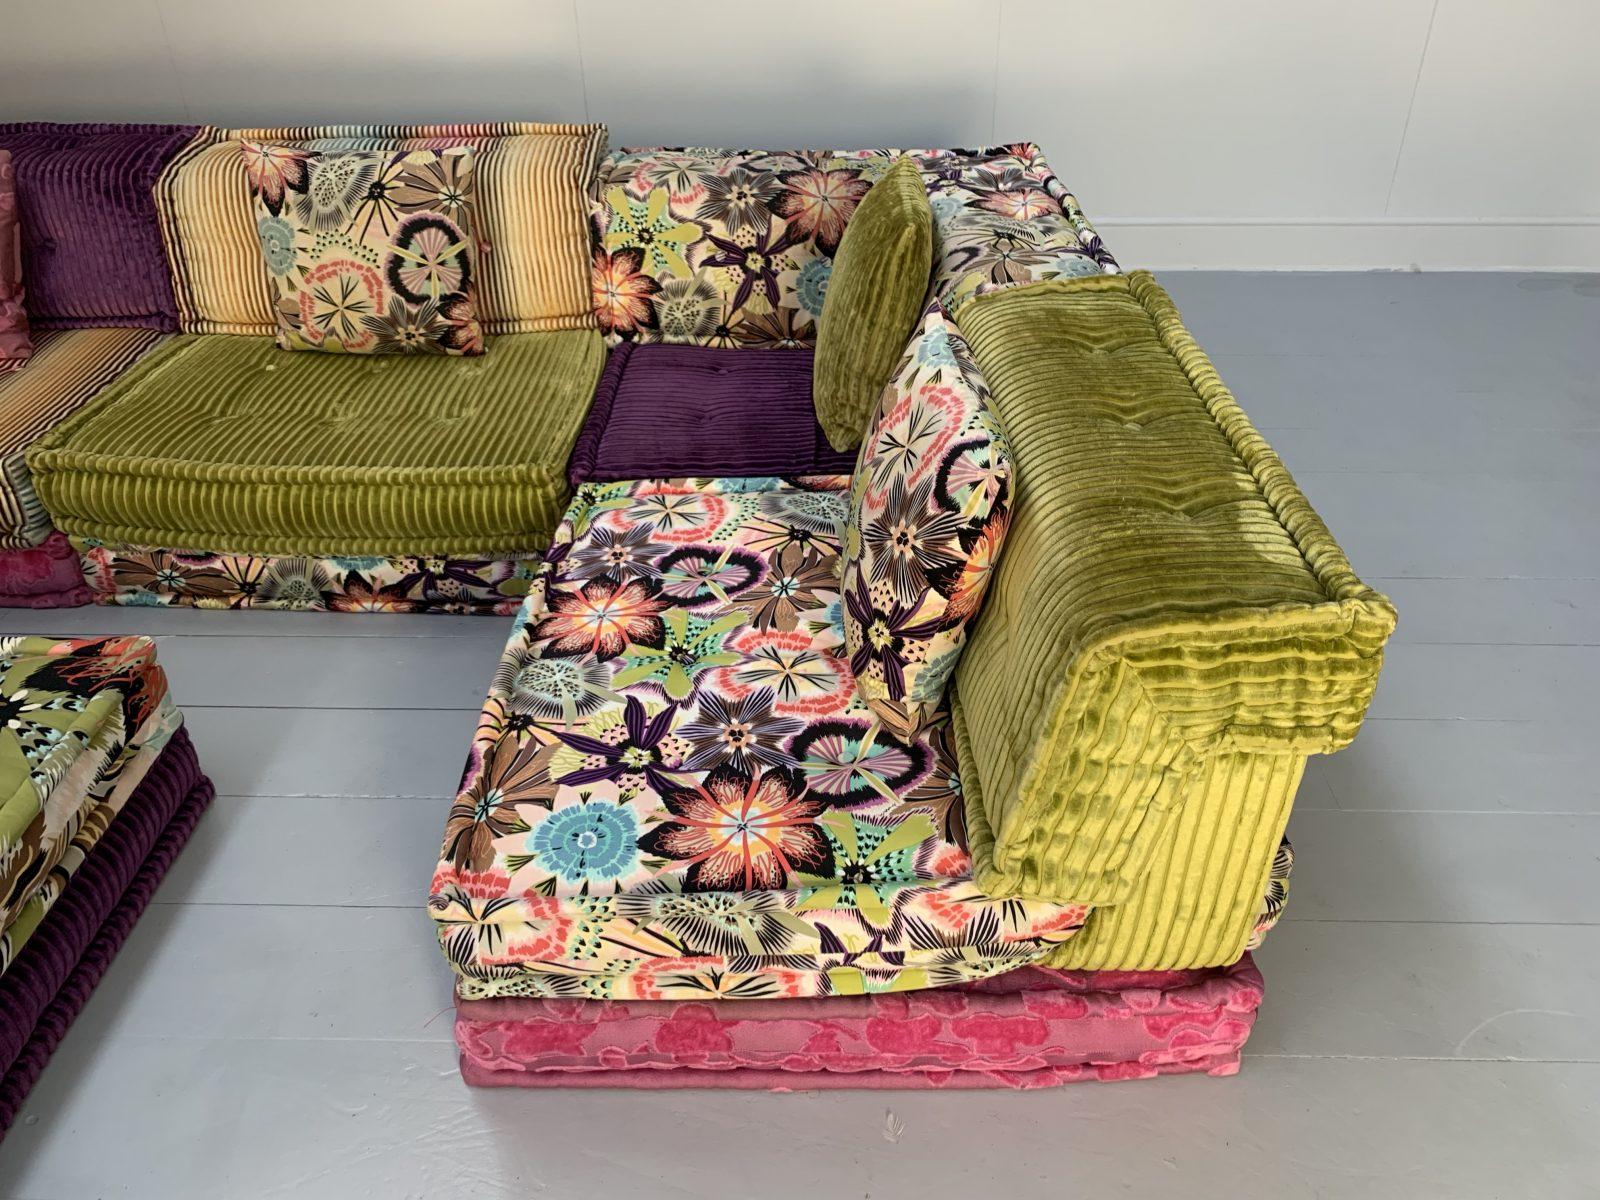 Contemporary Roche Bobois “Mah Jong” Sofa in Missoni & Lelievre Fabric